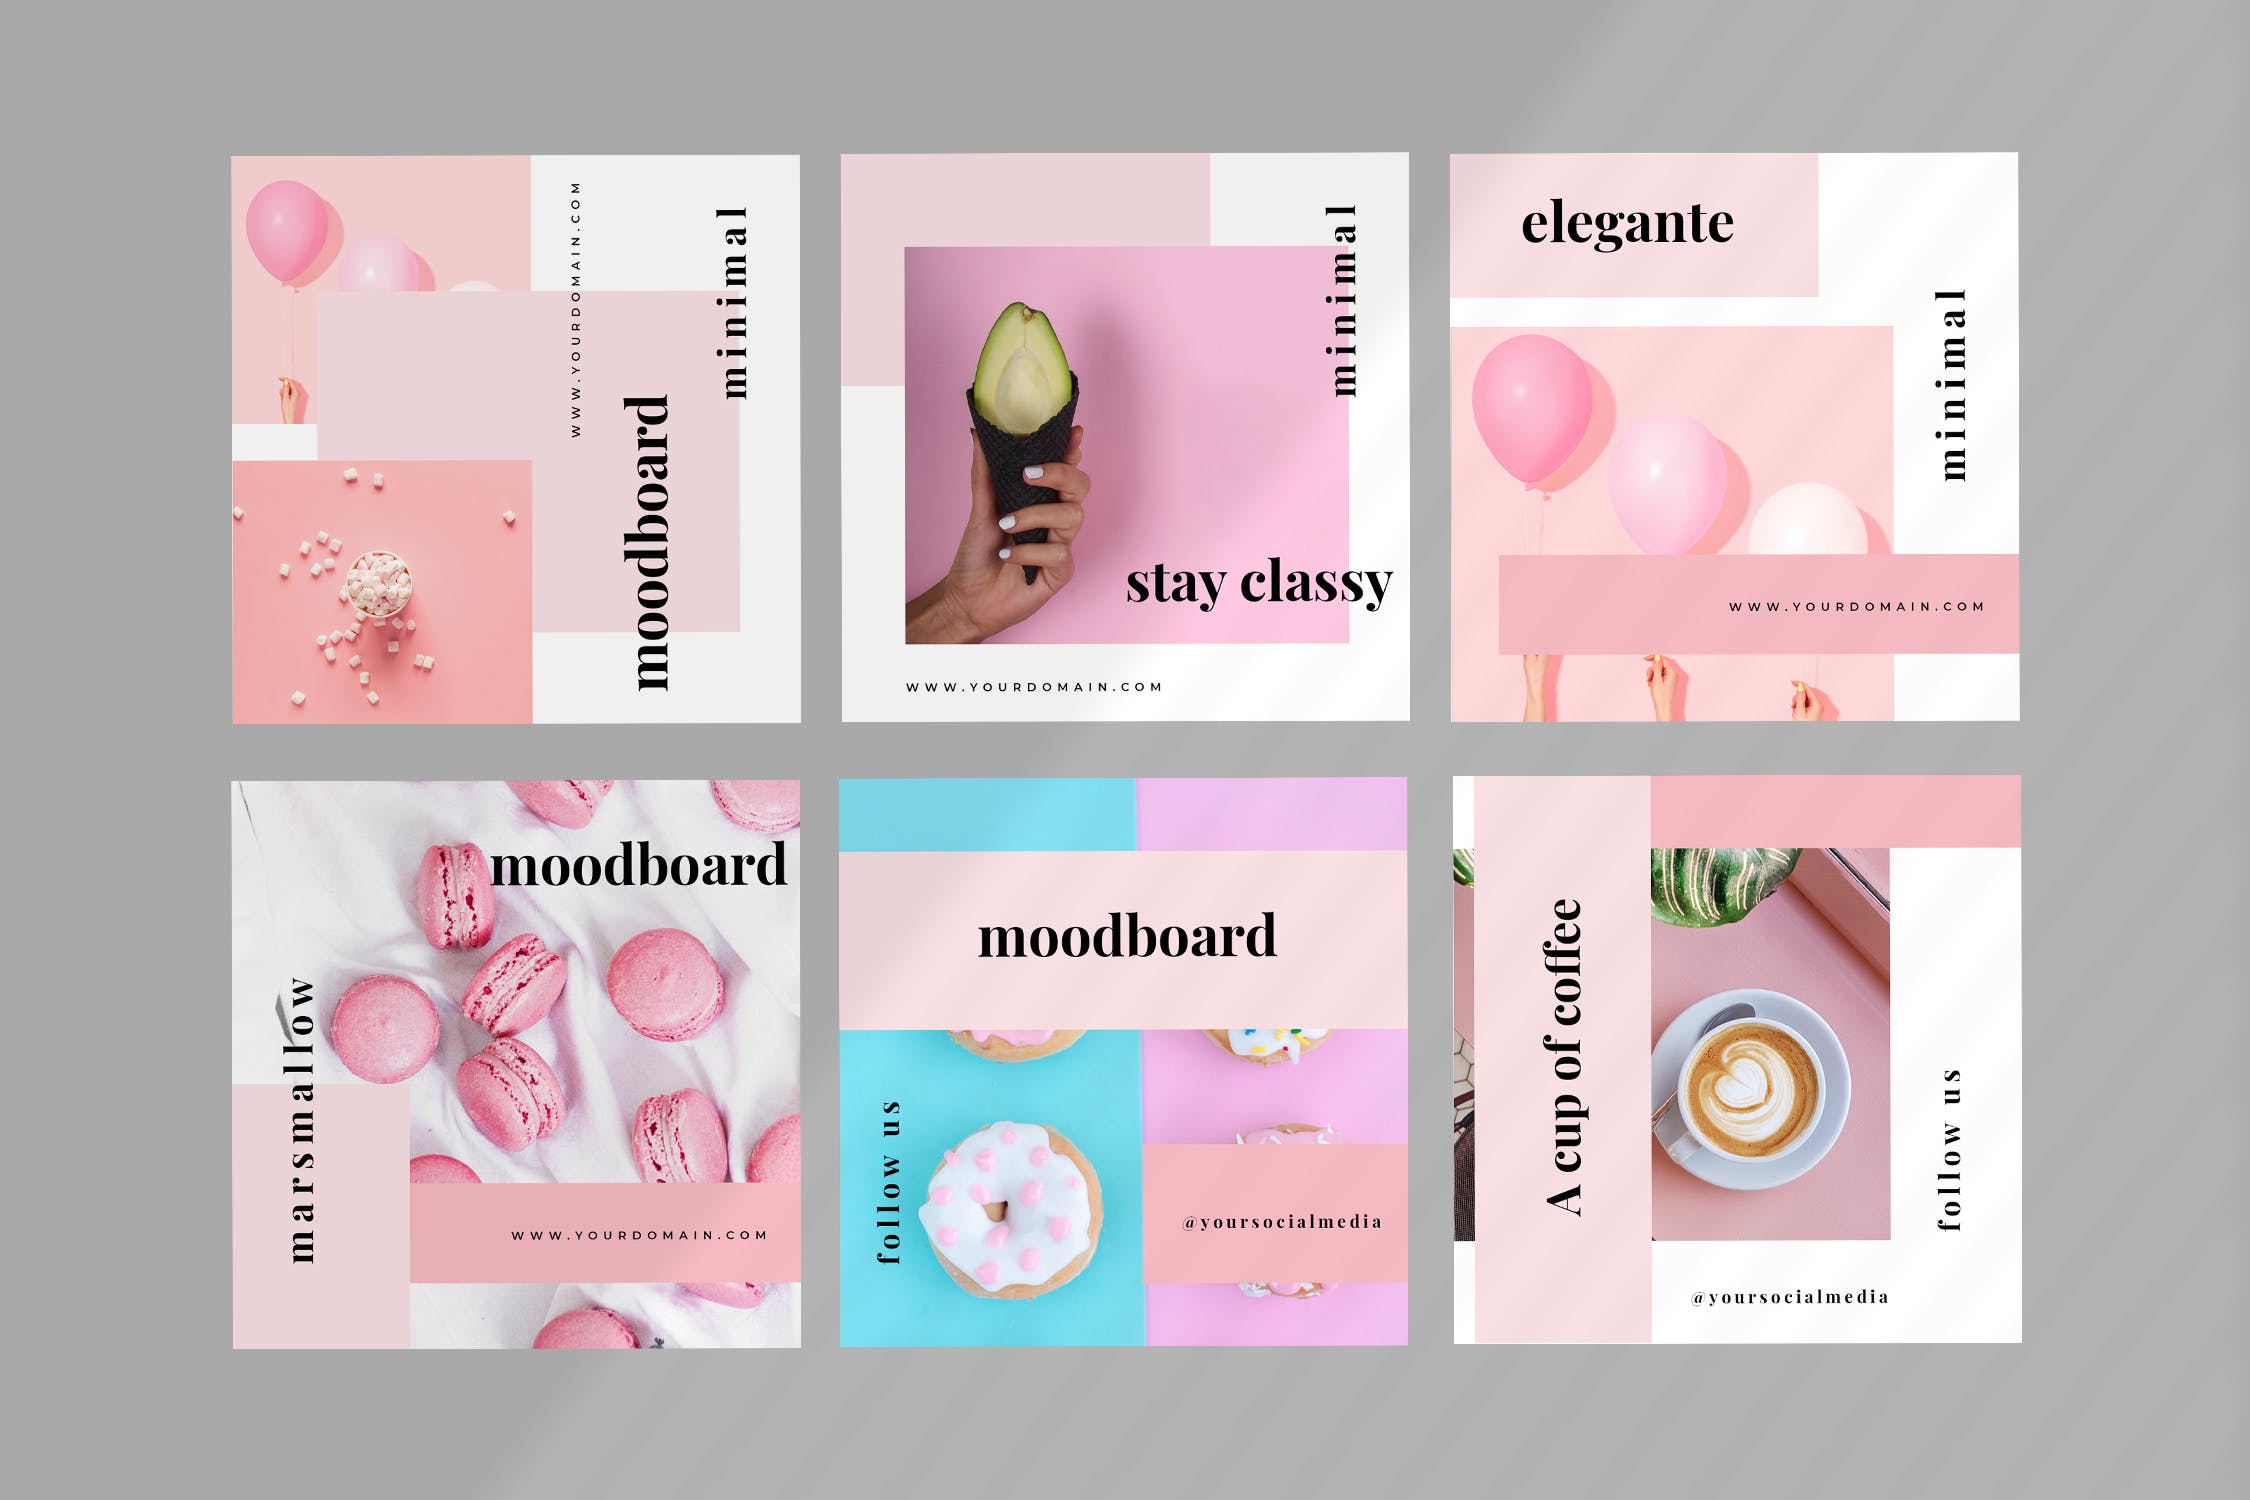 法式面包甜点店社交媒体新媒体设计素材包 Eight – Social Media Kit插图(1)